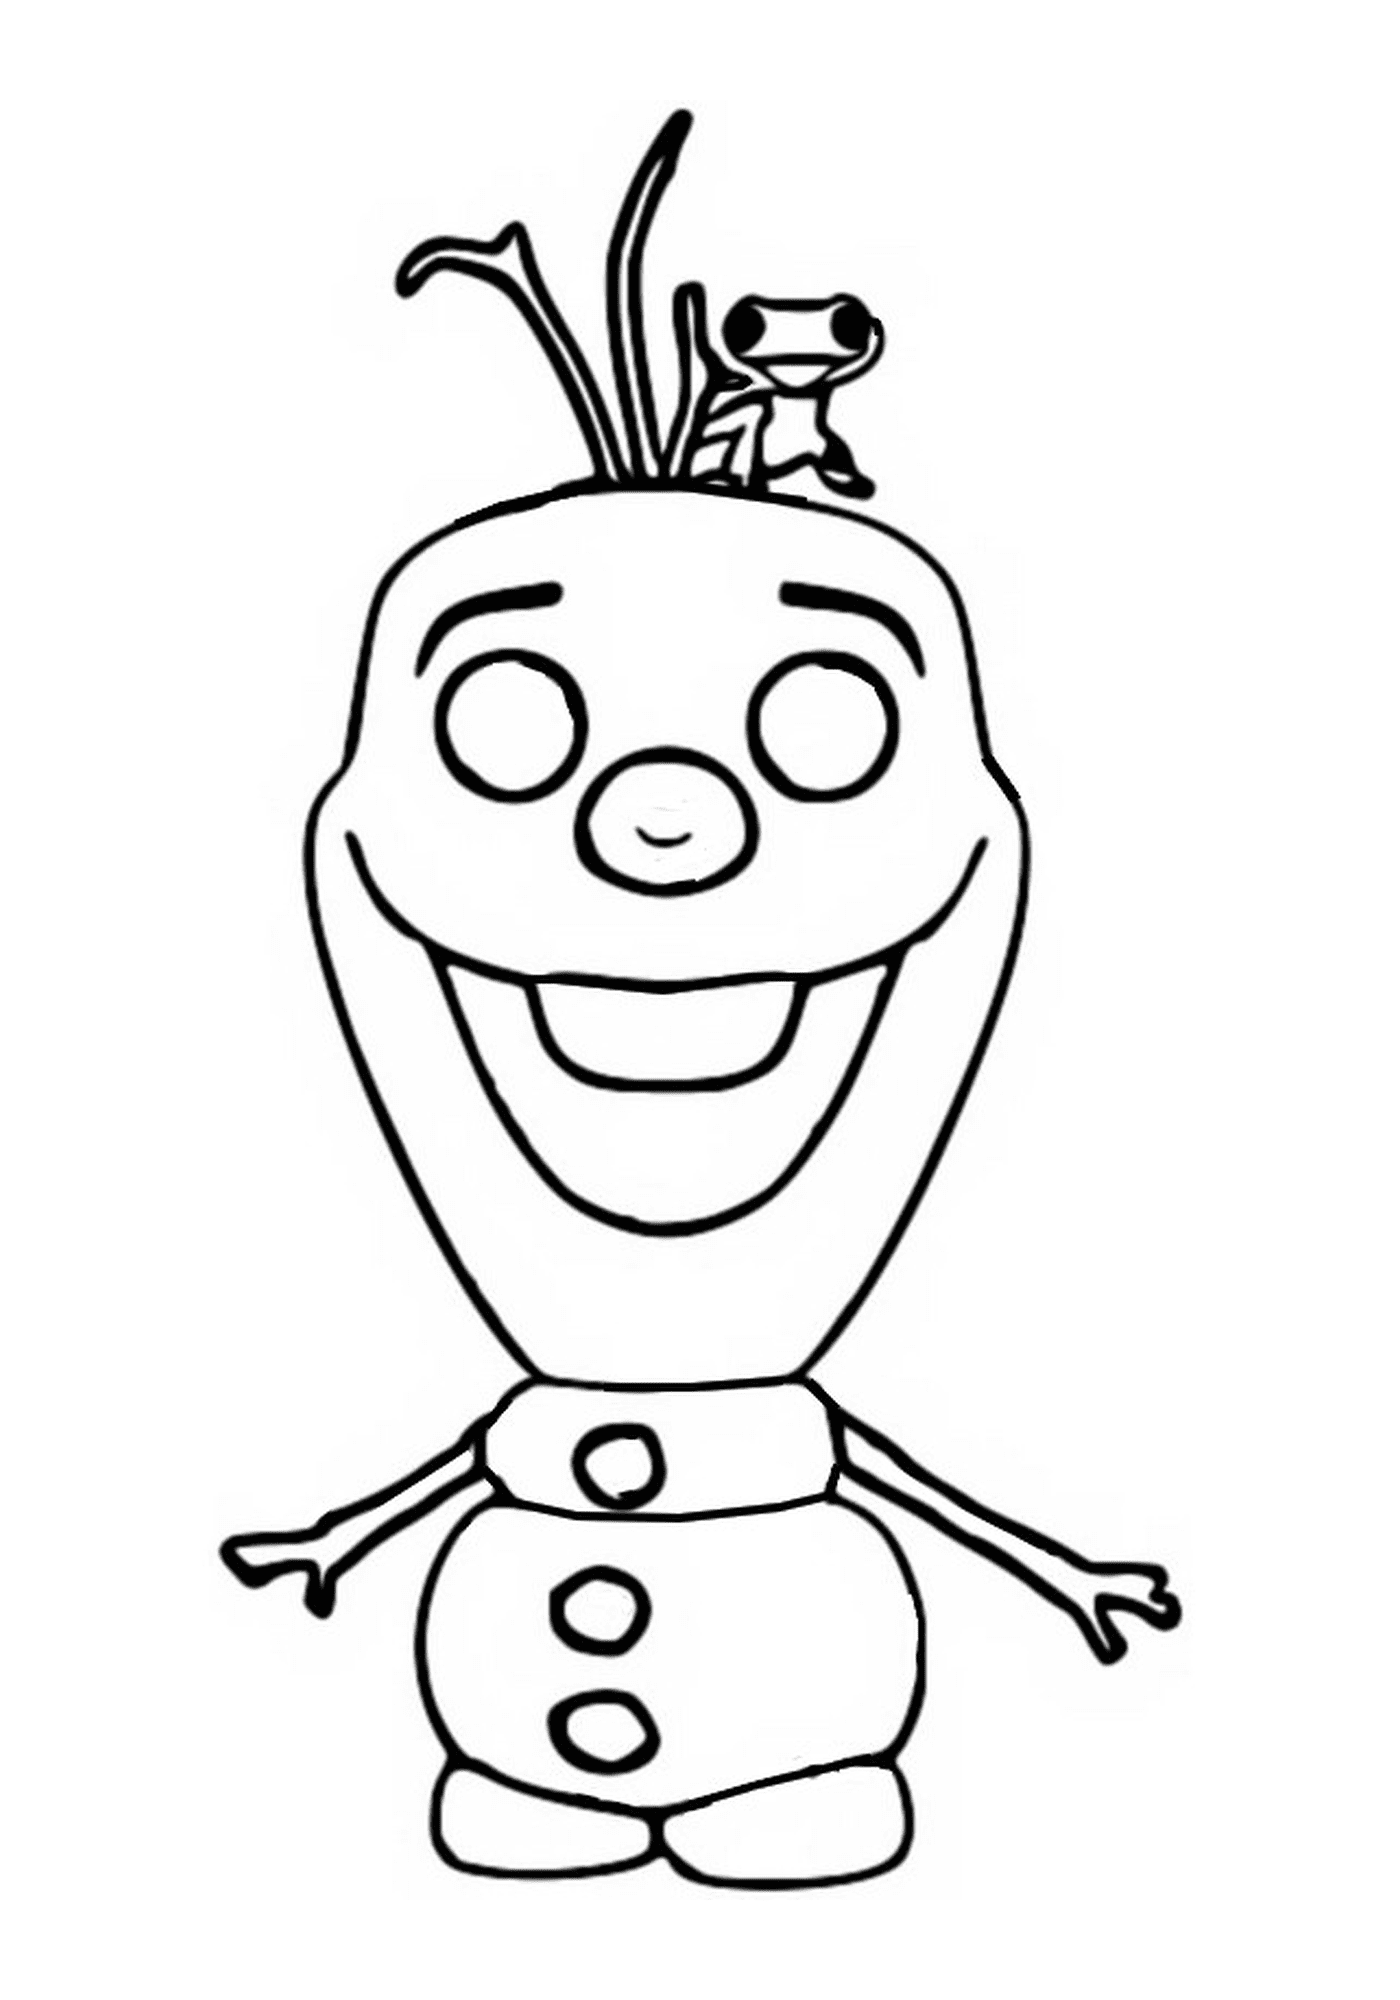   Olaf, Frozen 2, personnage de dessin animé souriant 